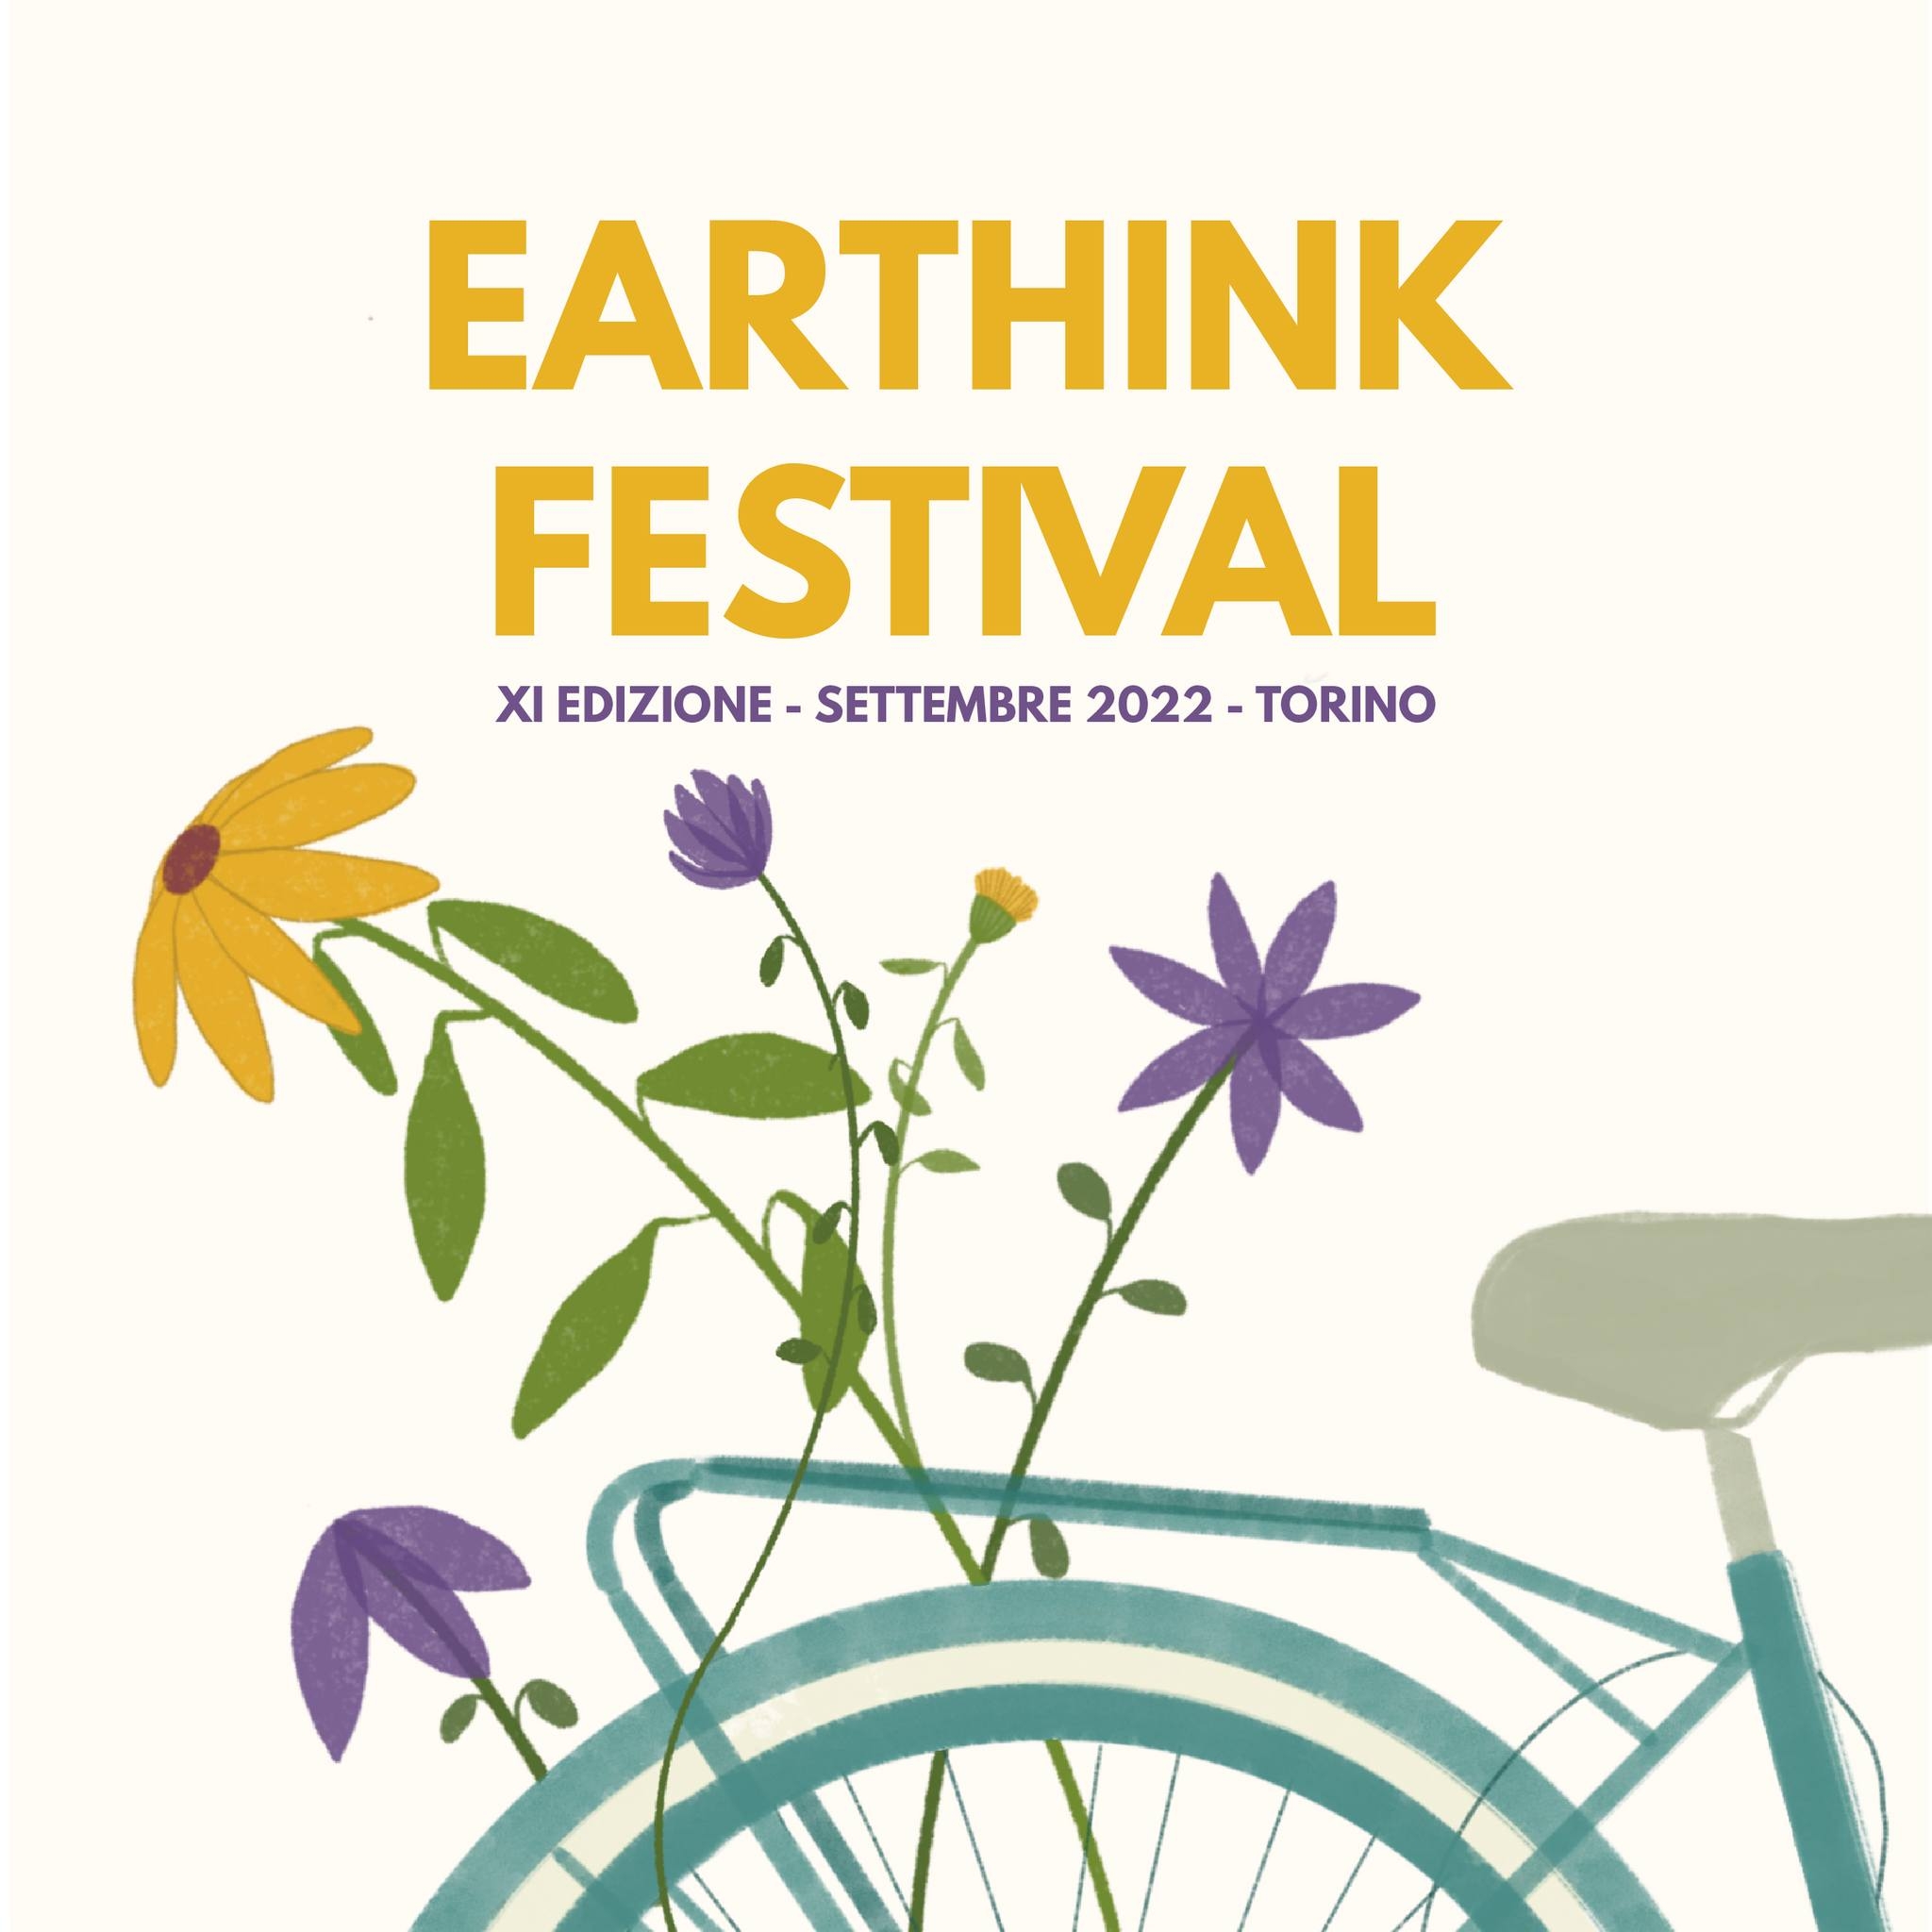 Earthink Festival